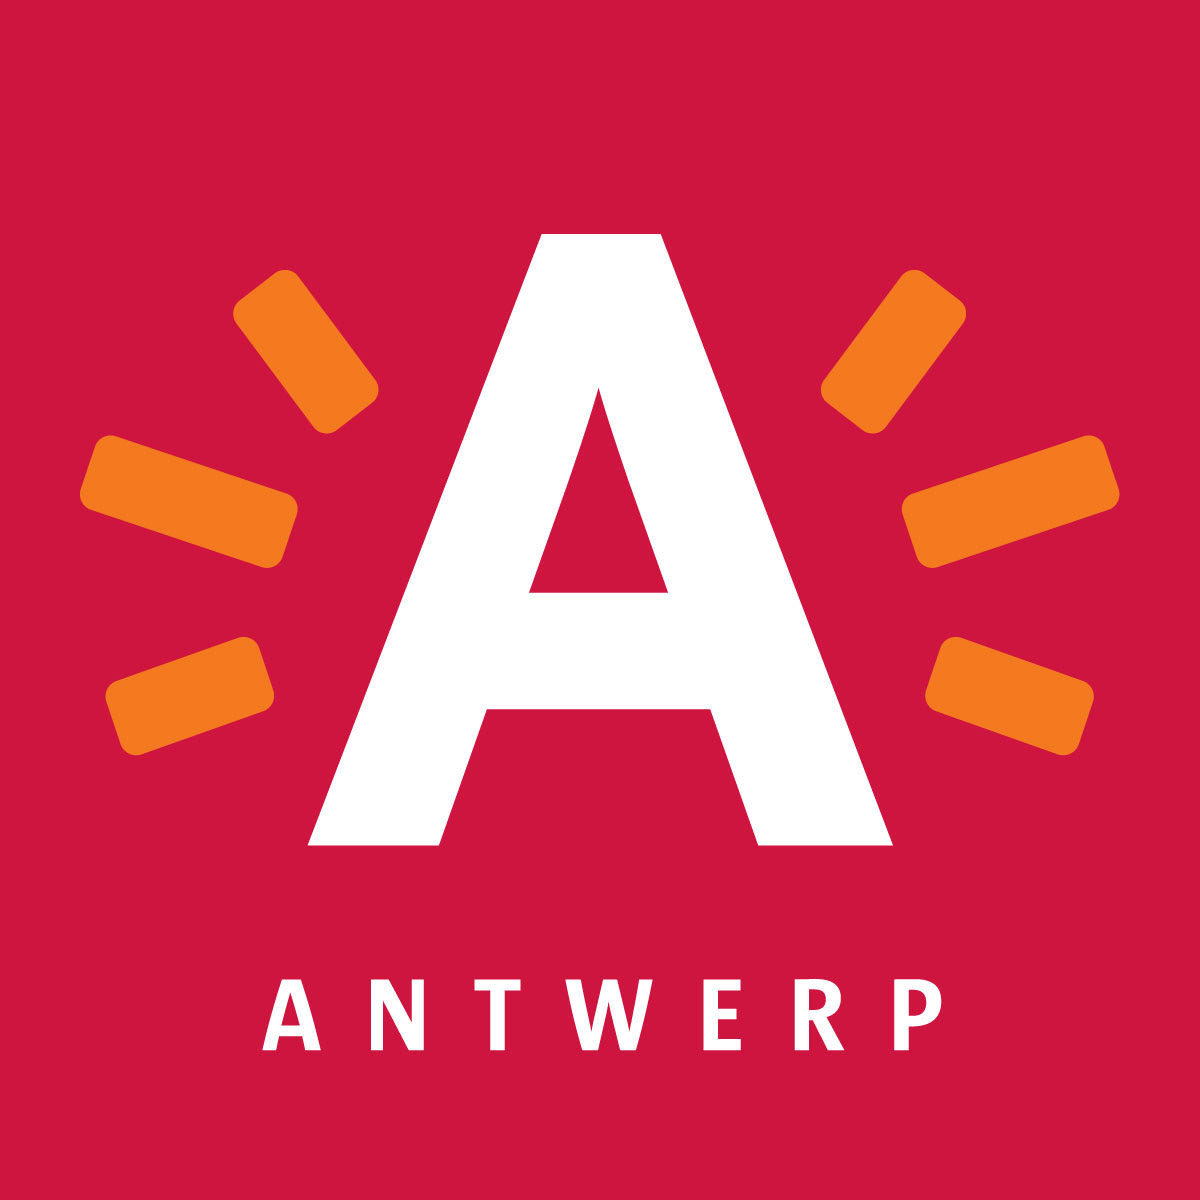 City of Antwerp